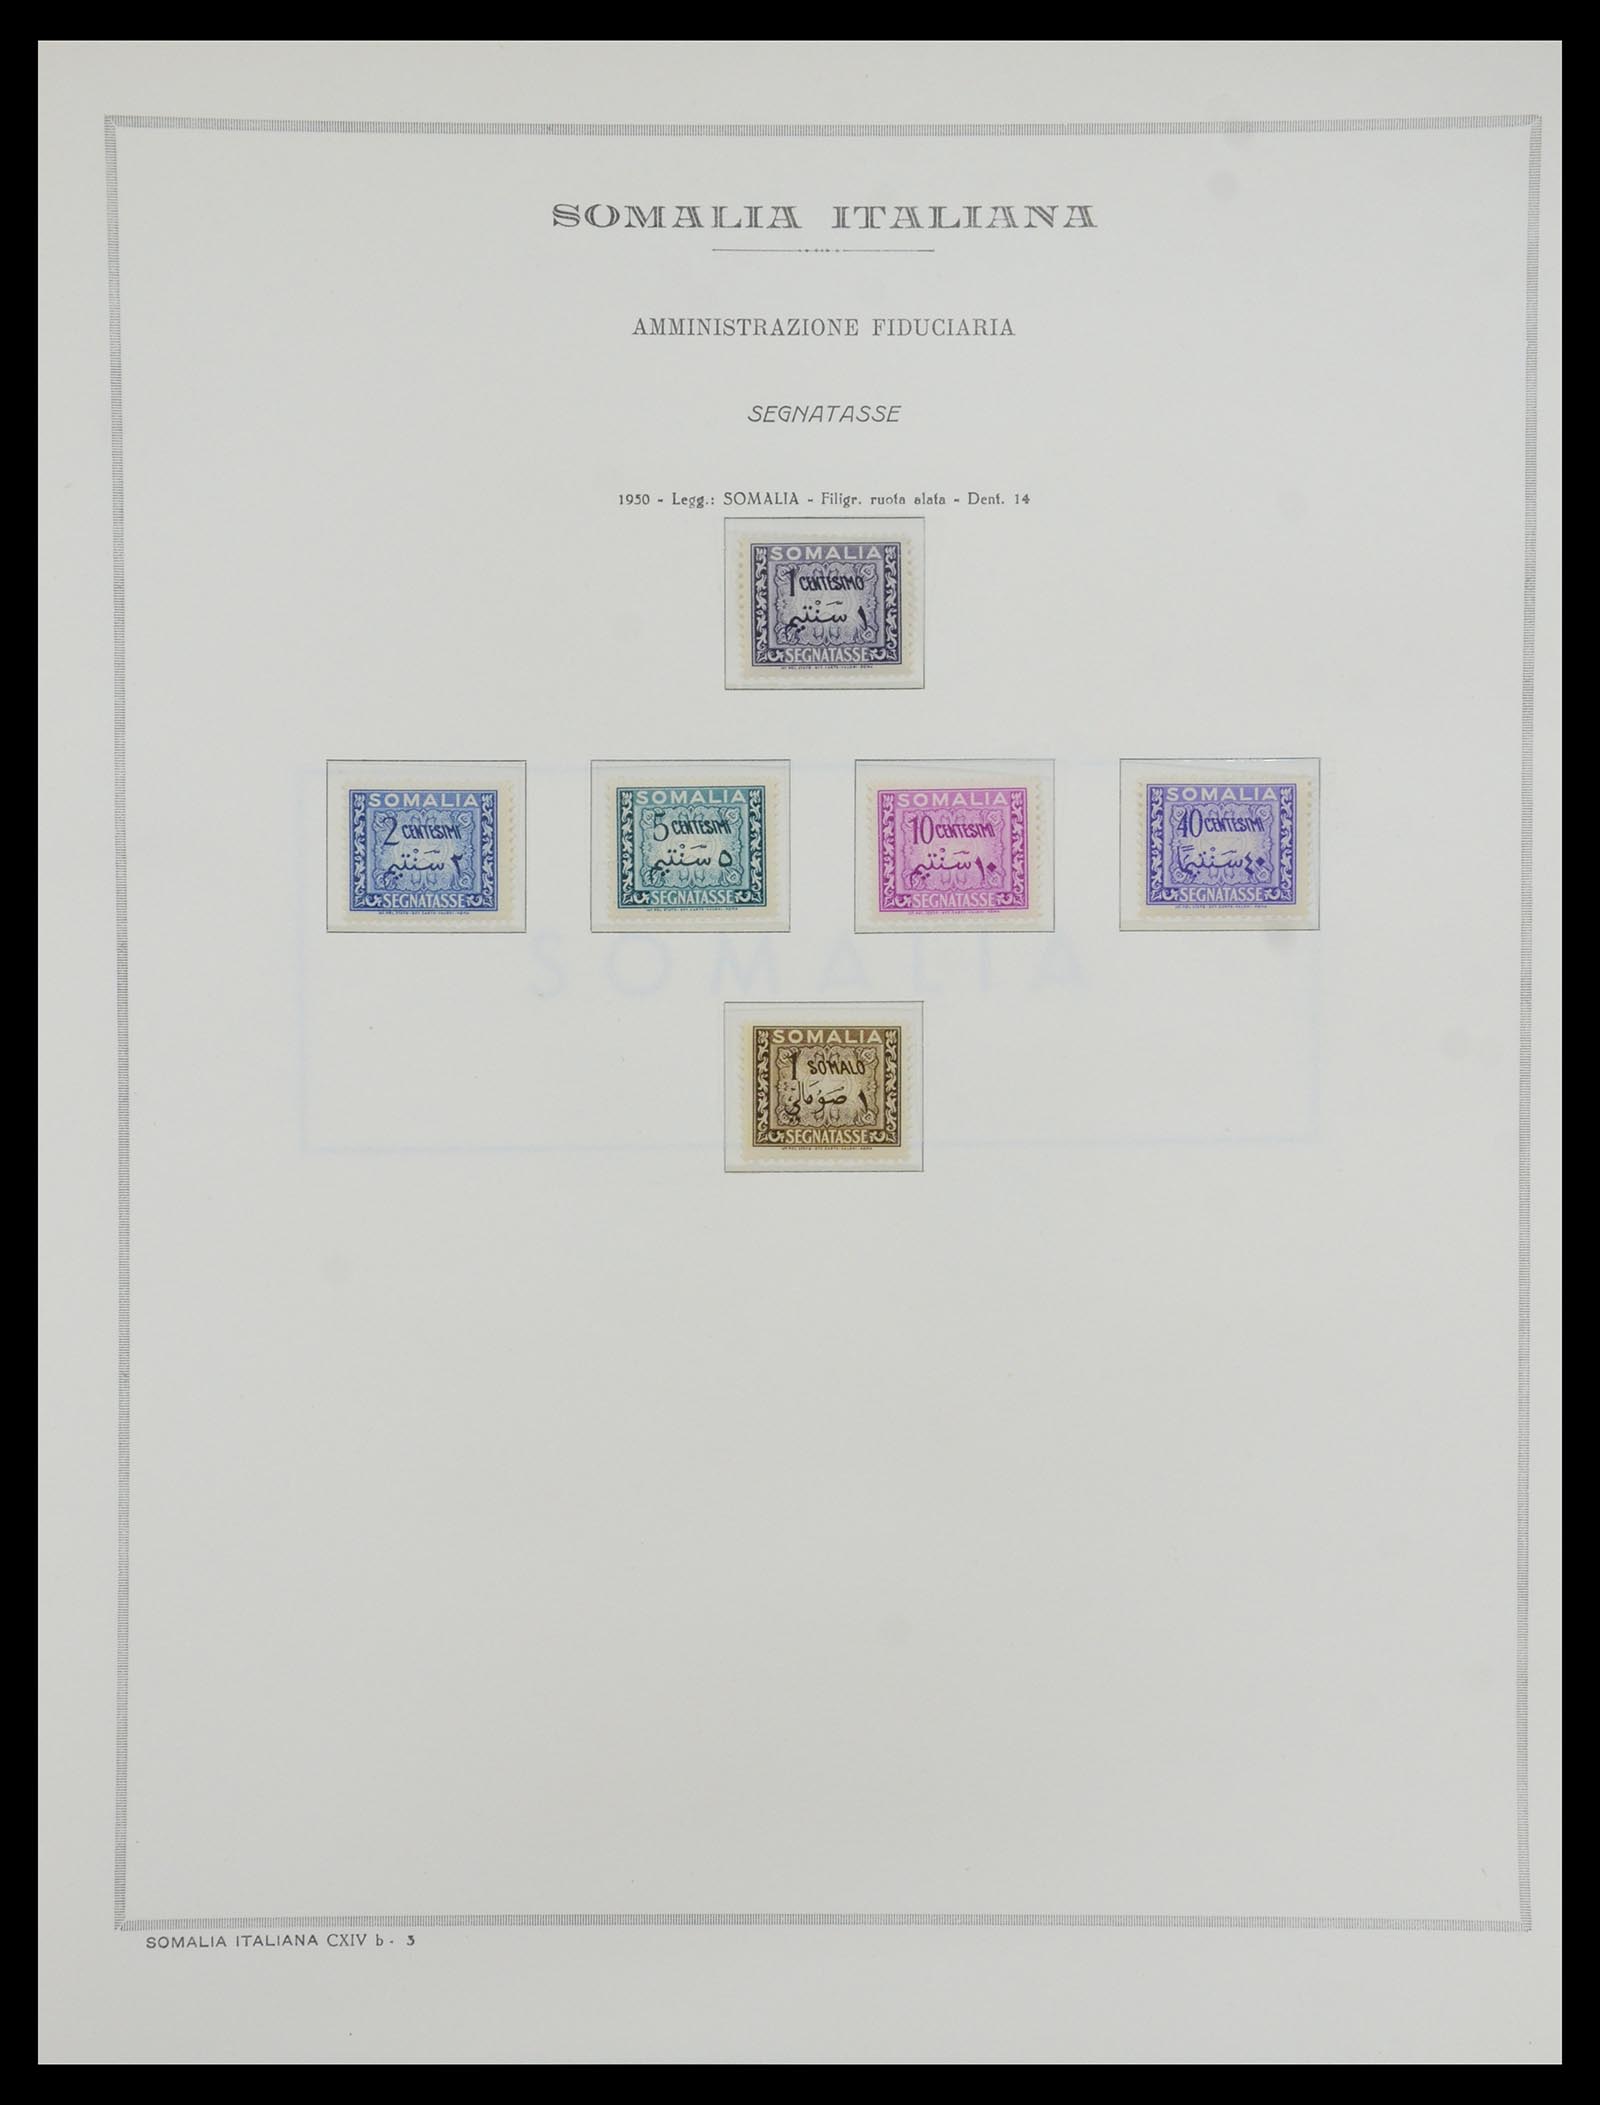 35328 075 - Stamp Collection 35328 Libya and Somalia 1952-1973.